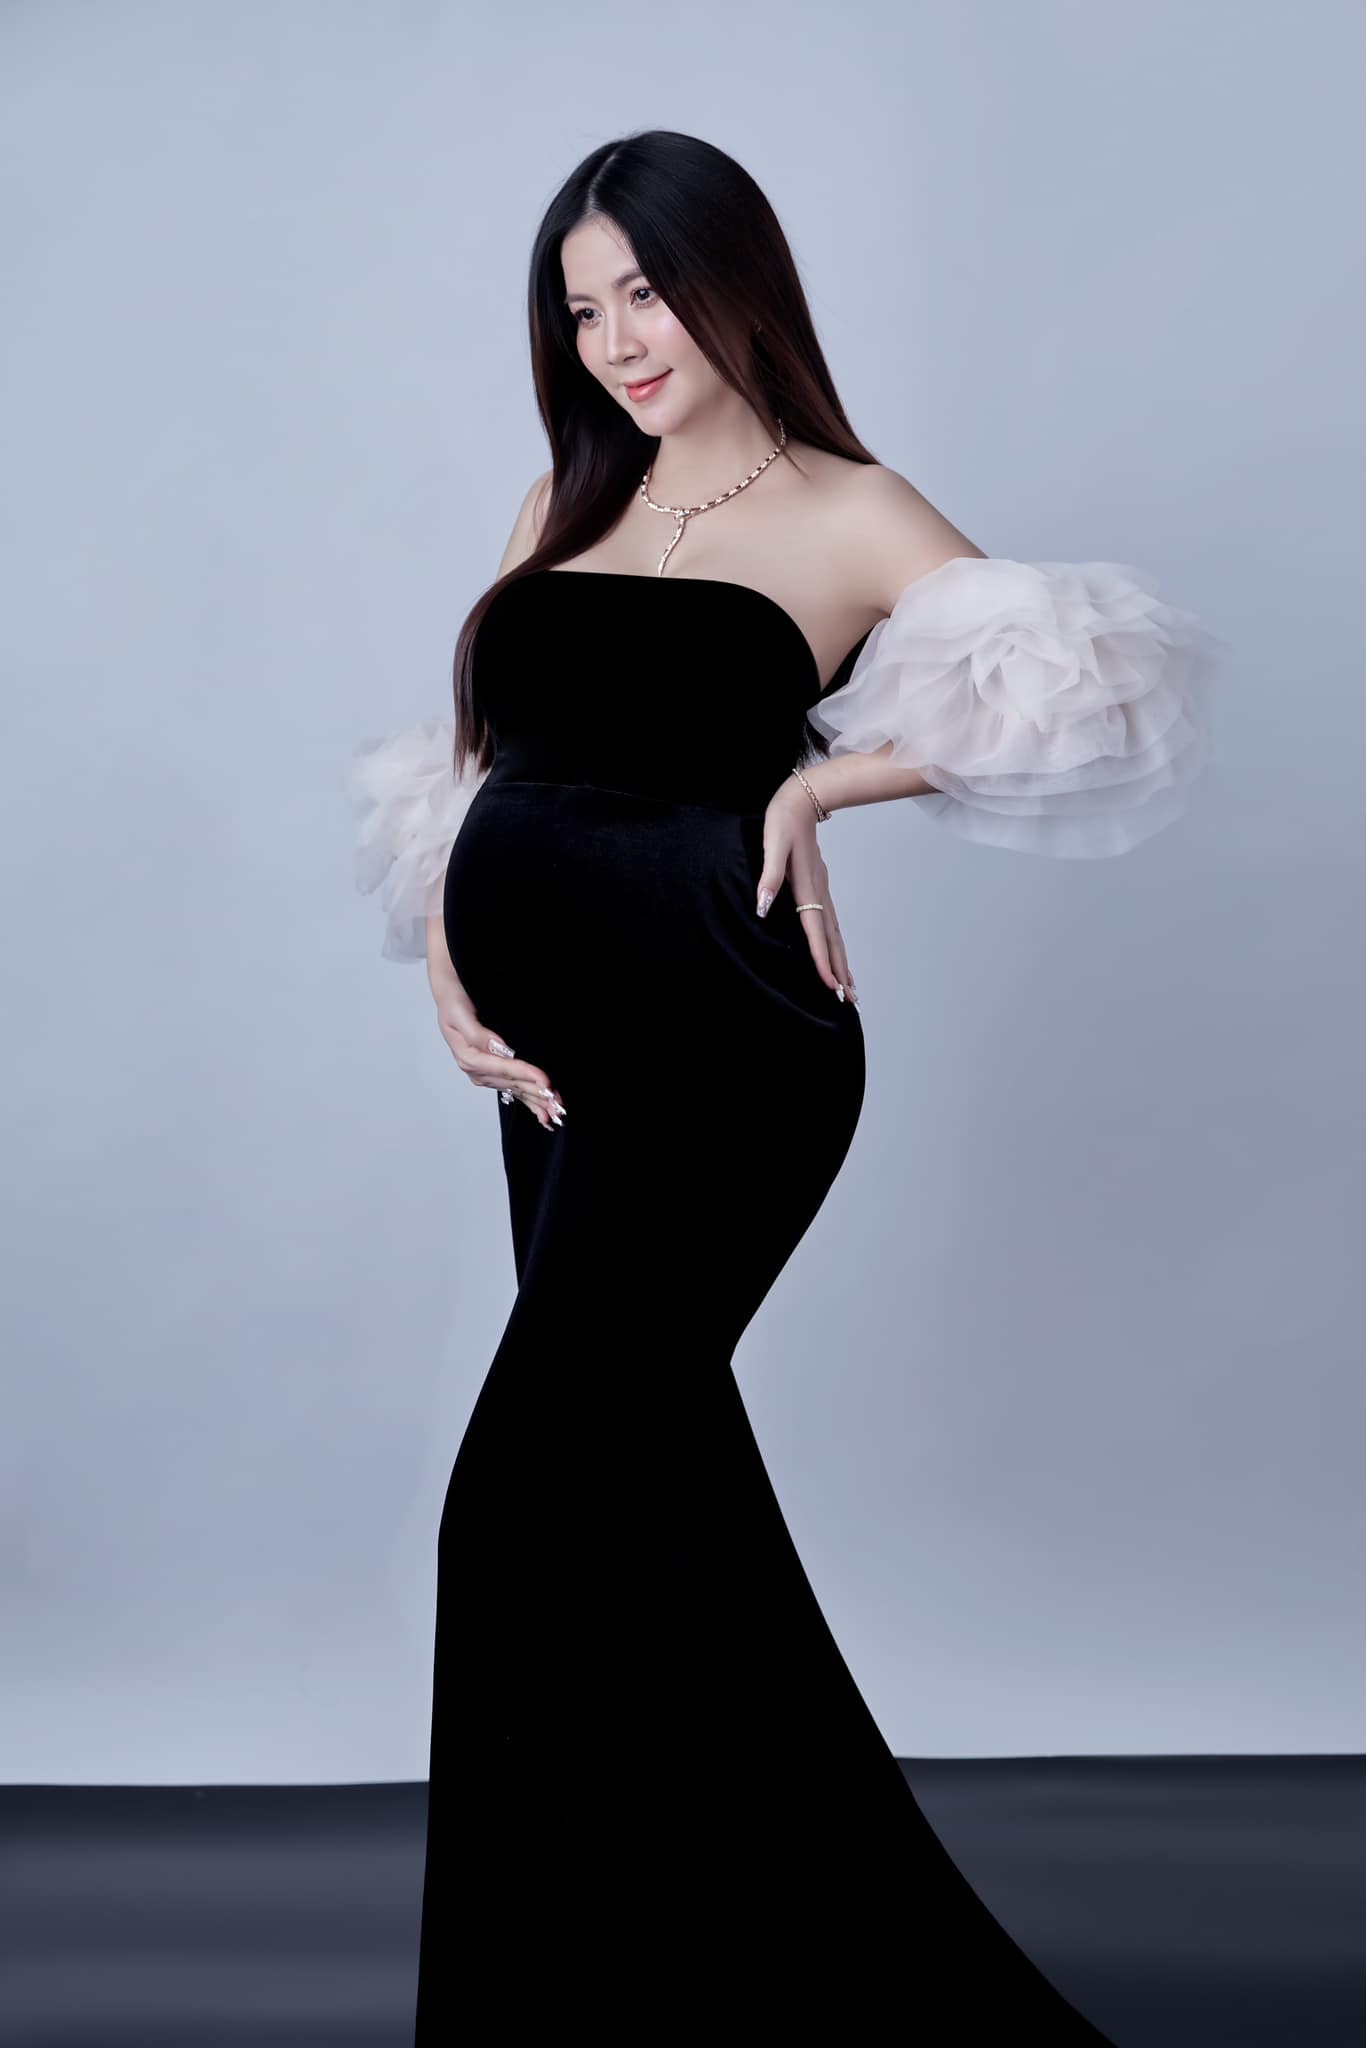 Diễn viên Kha Ly “vỡ òa” báo tin đang mang thai 7 tháng sau 8 năm kết hôn, nhan sắc mới gây chú ý - ảnh 4